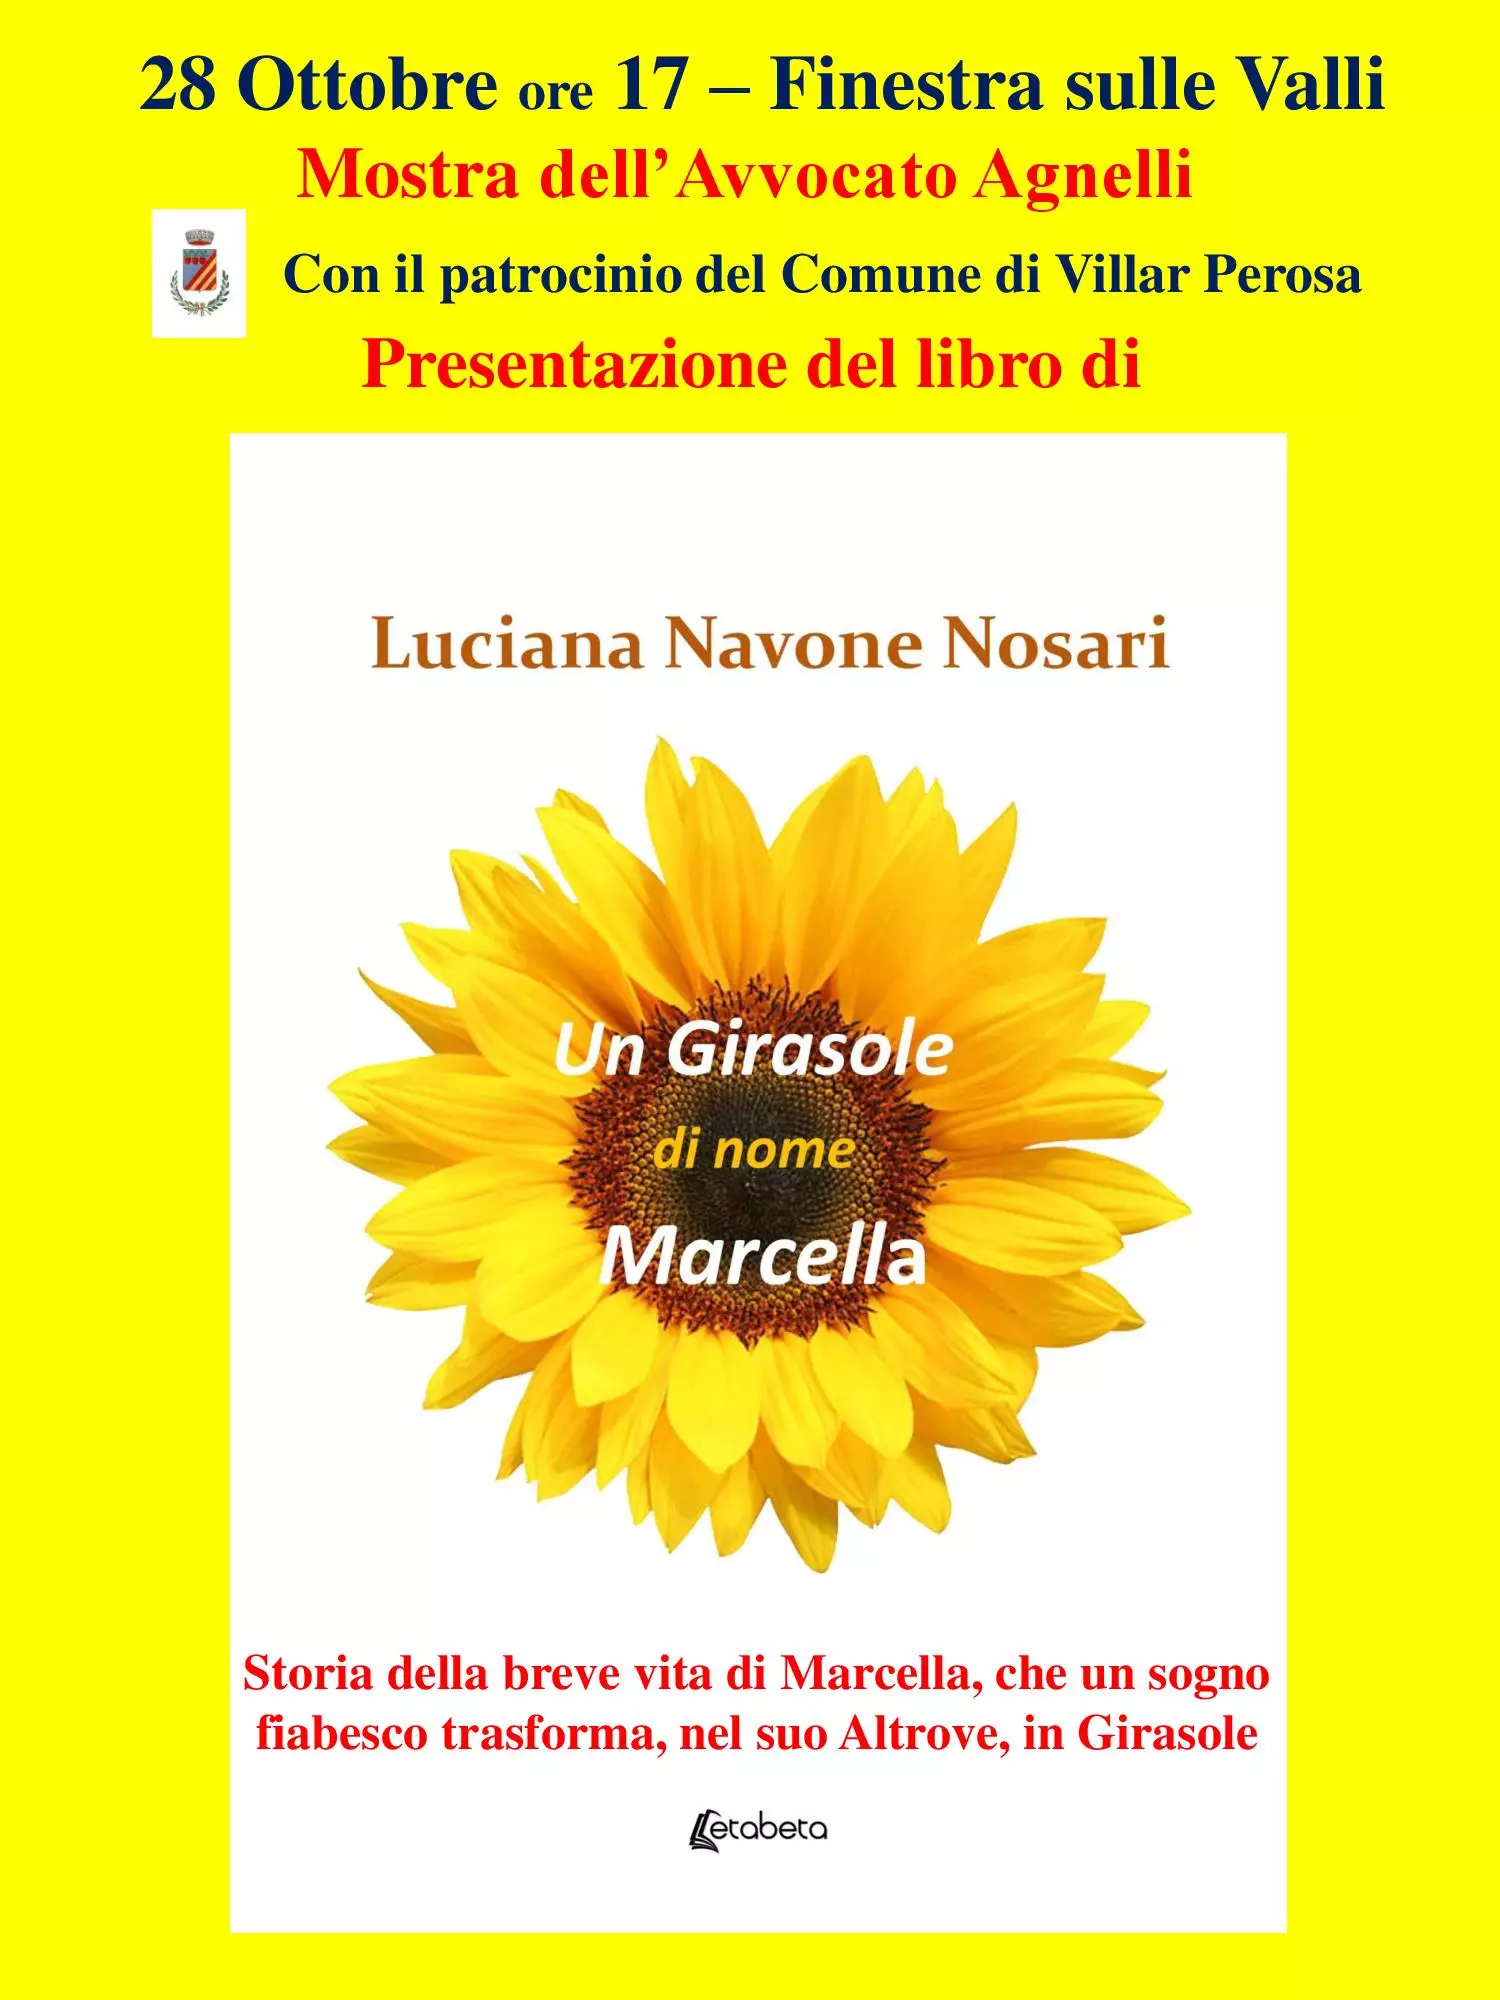 Presentazione del libro "Un Girasole di nome Marcella" 